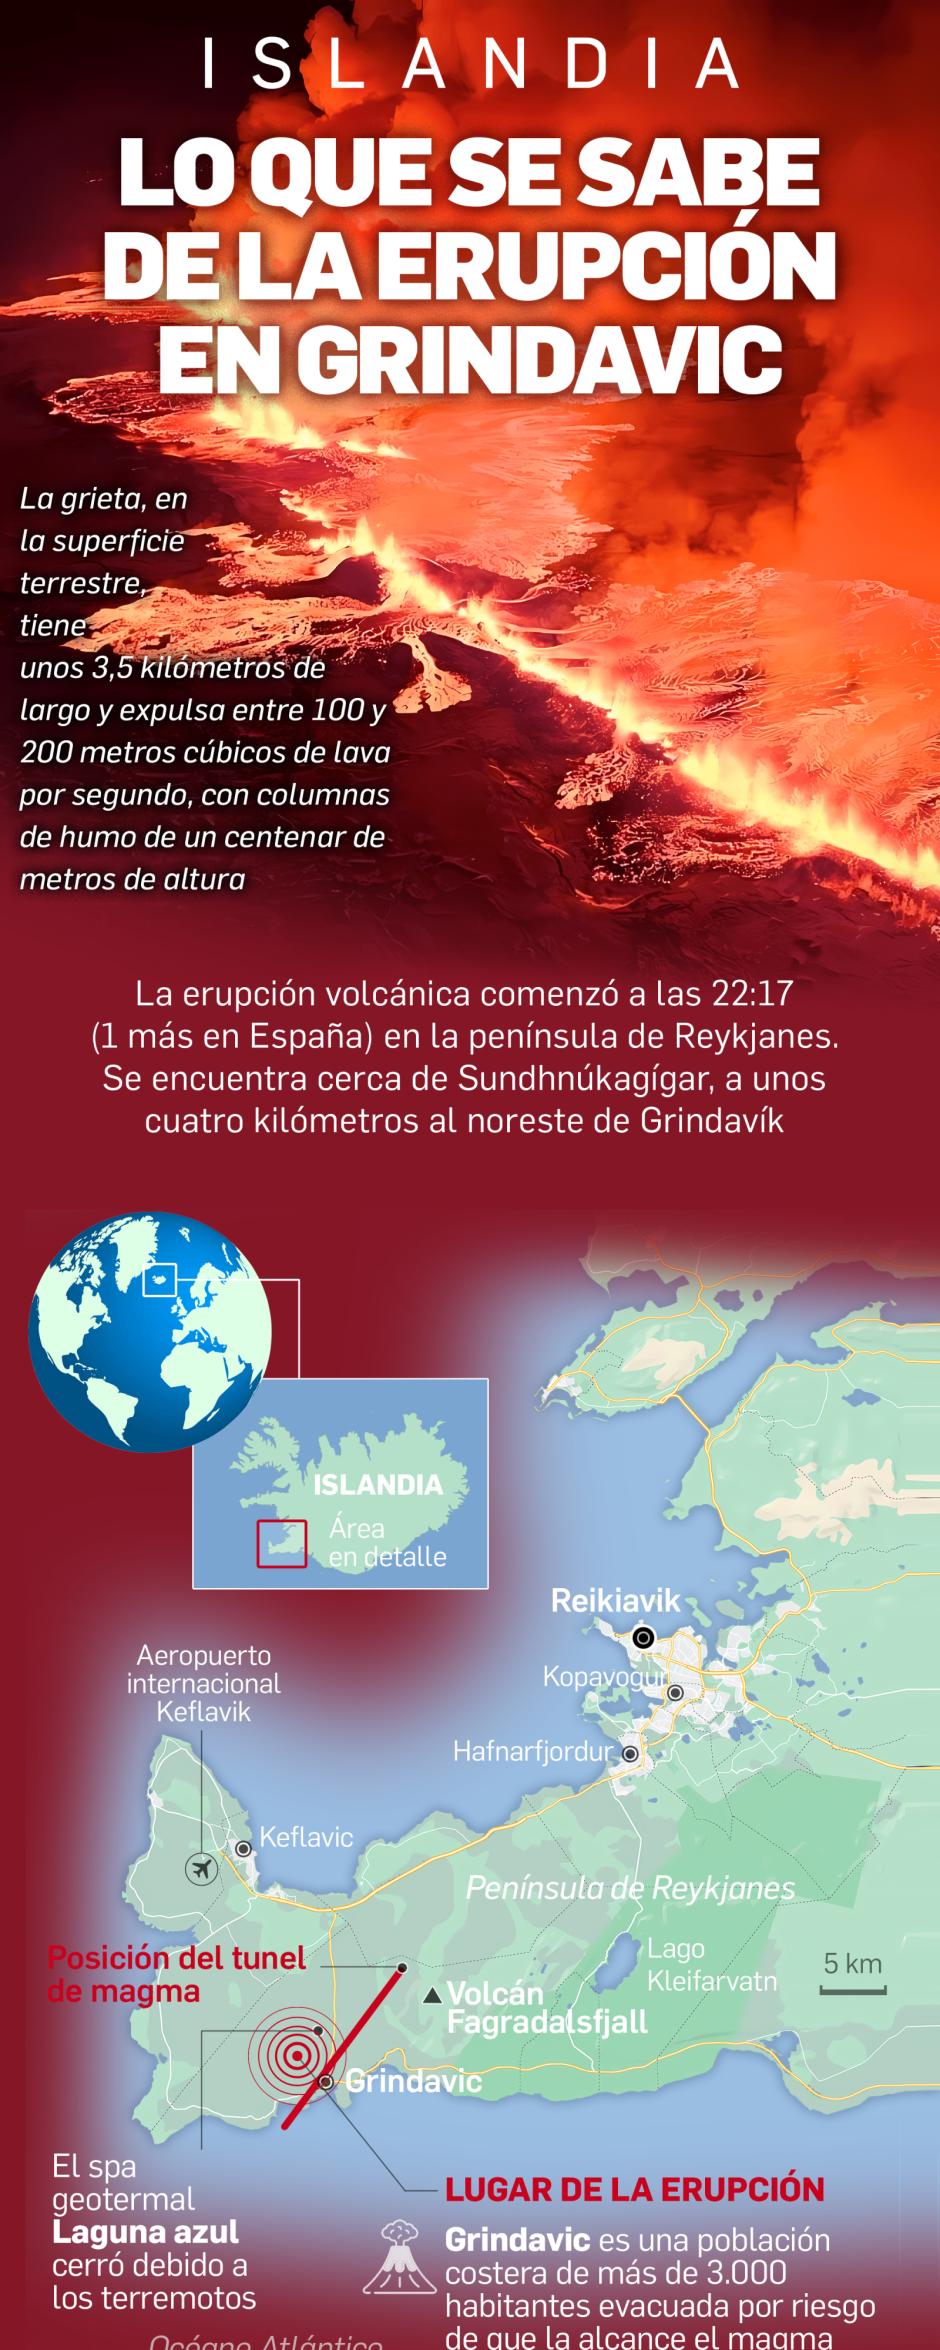 Lo que se sabe de la erupción